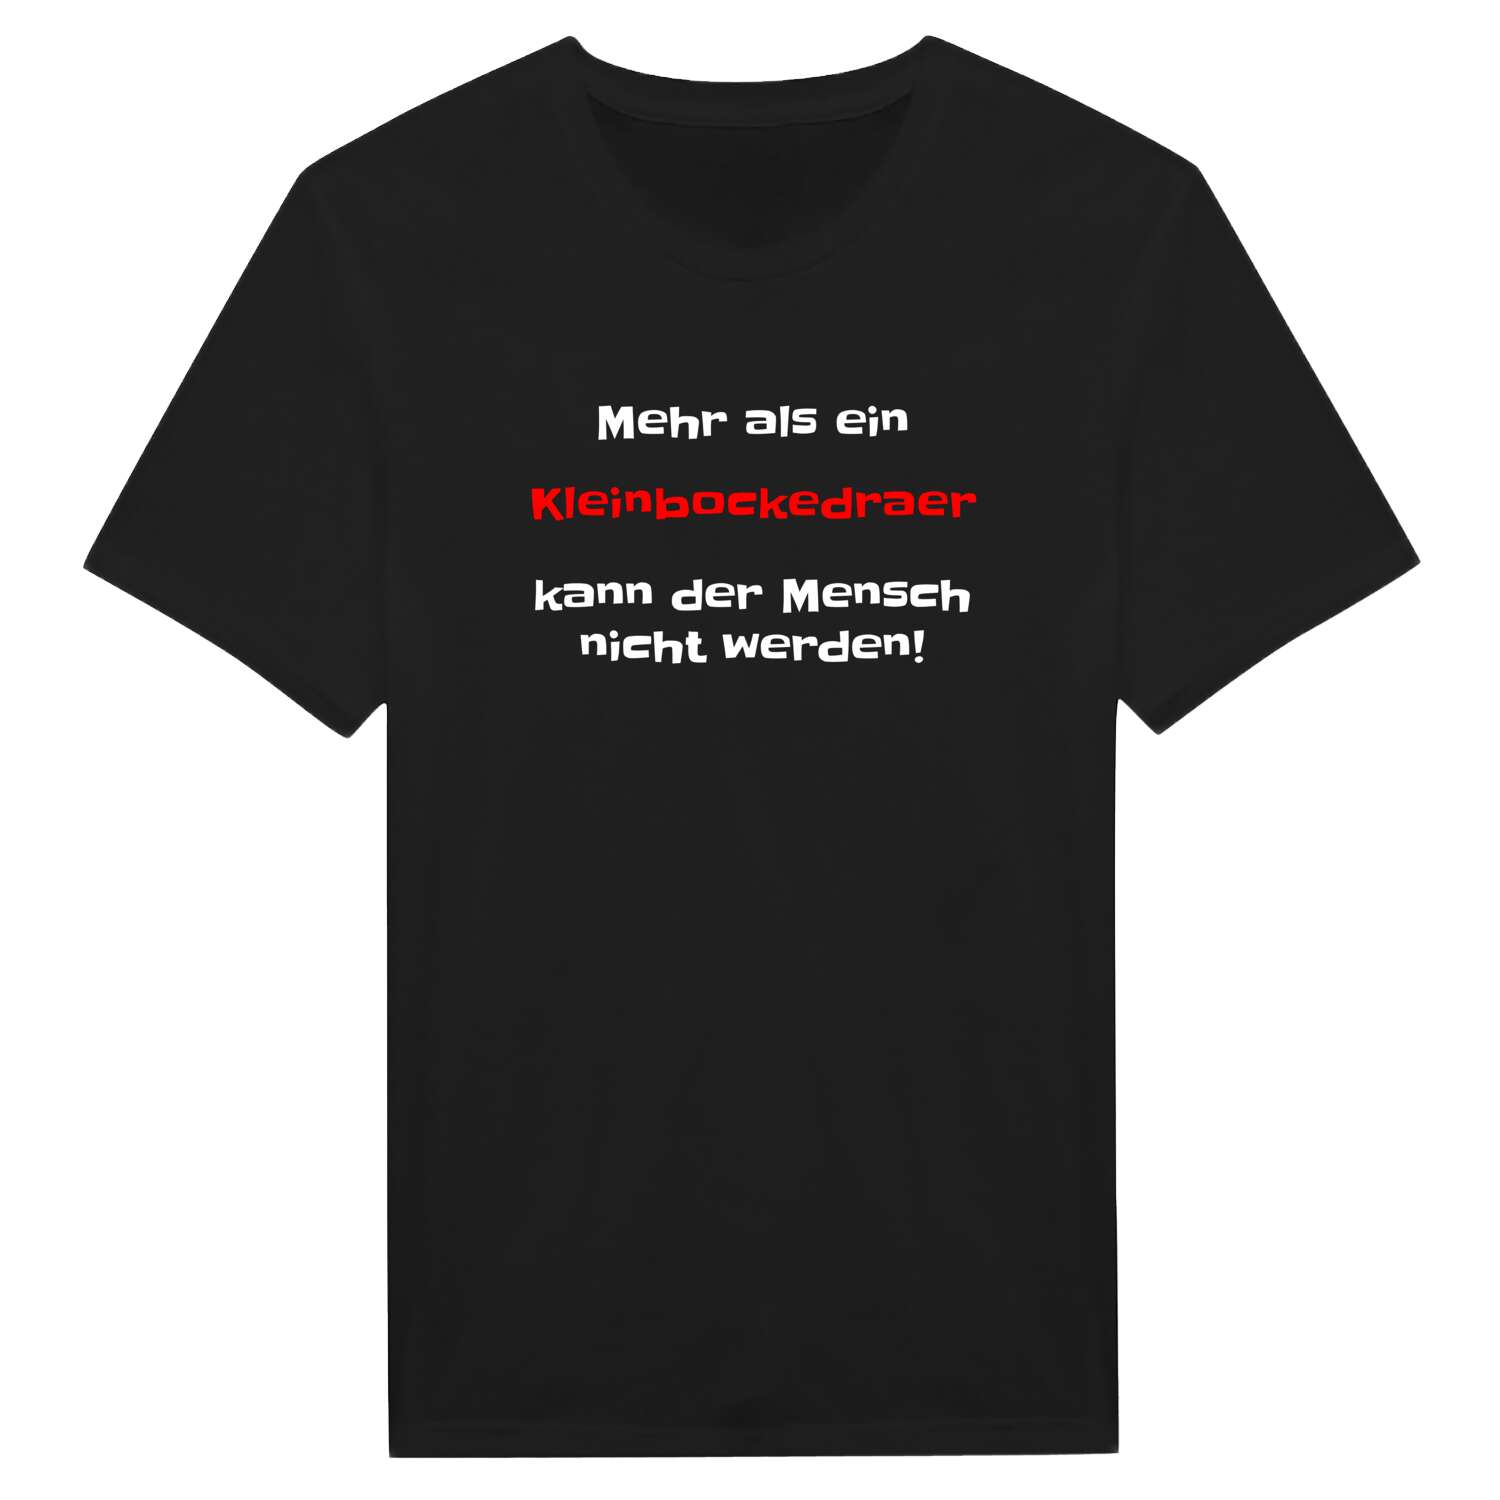 Kleinbockedra T-Shirt »Mehr als ein«